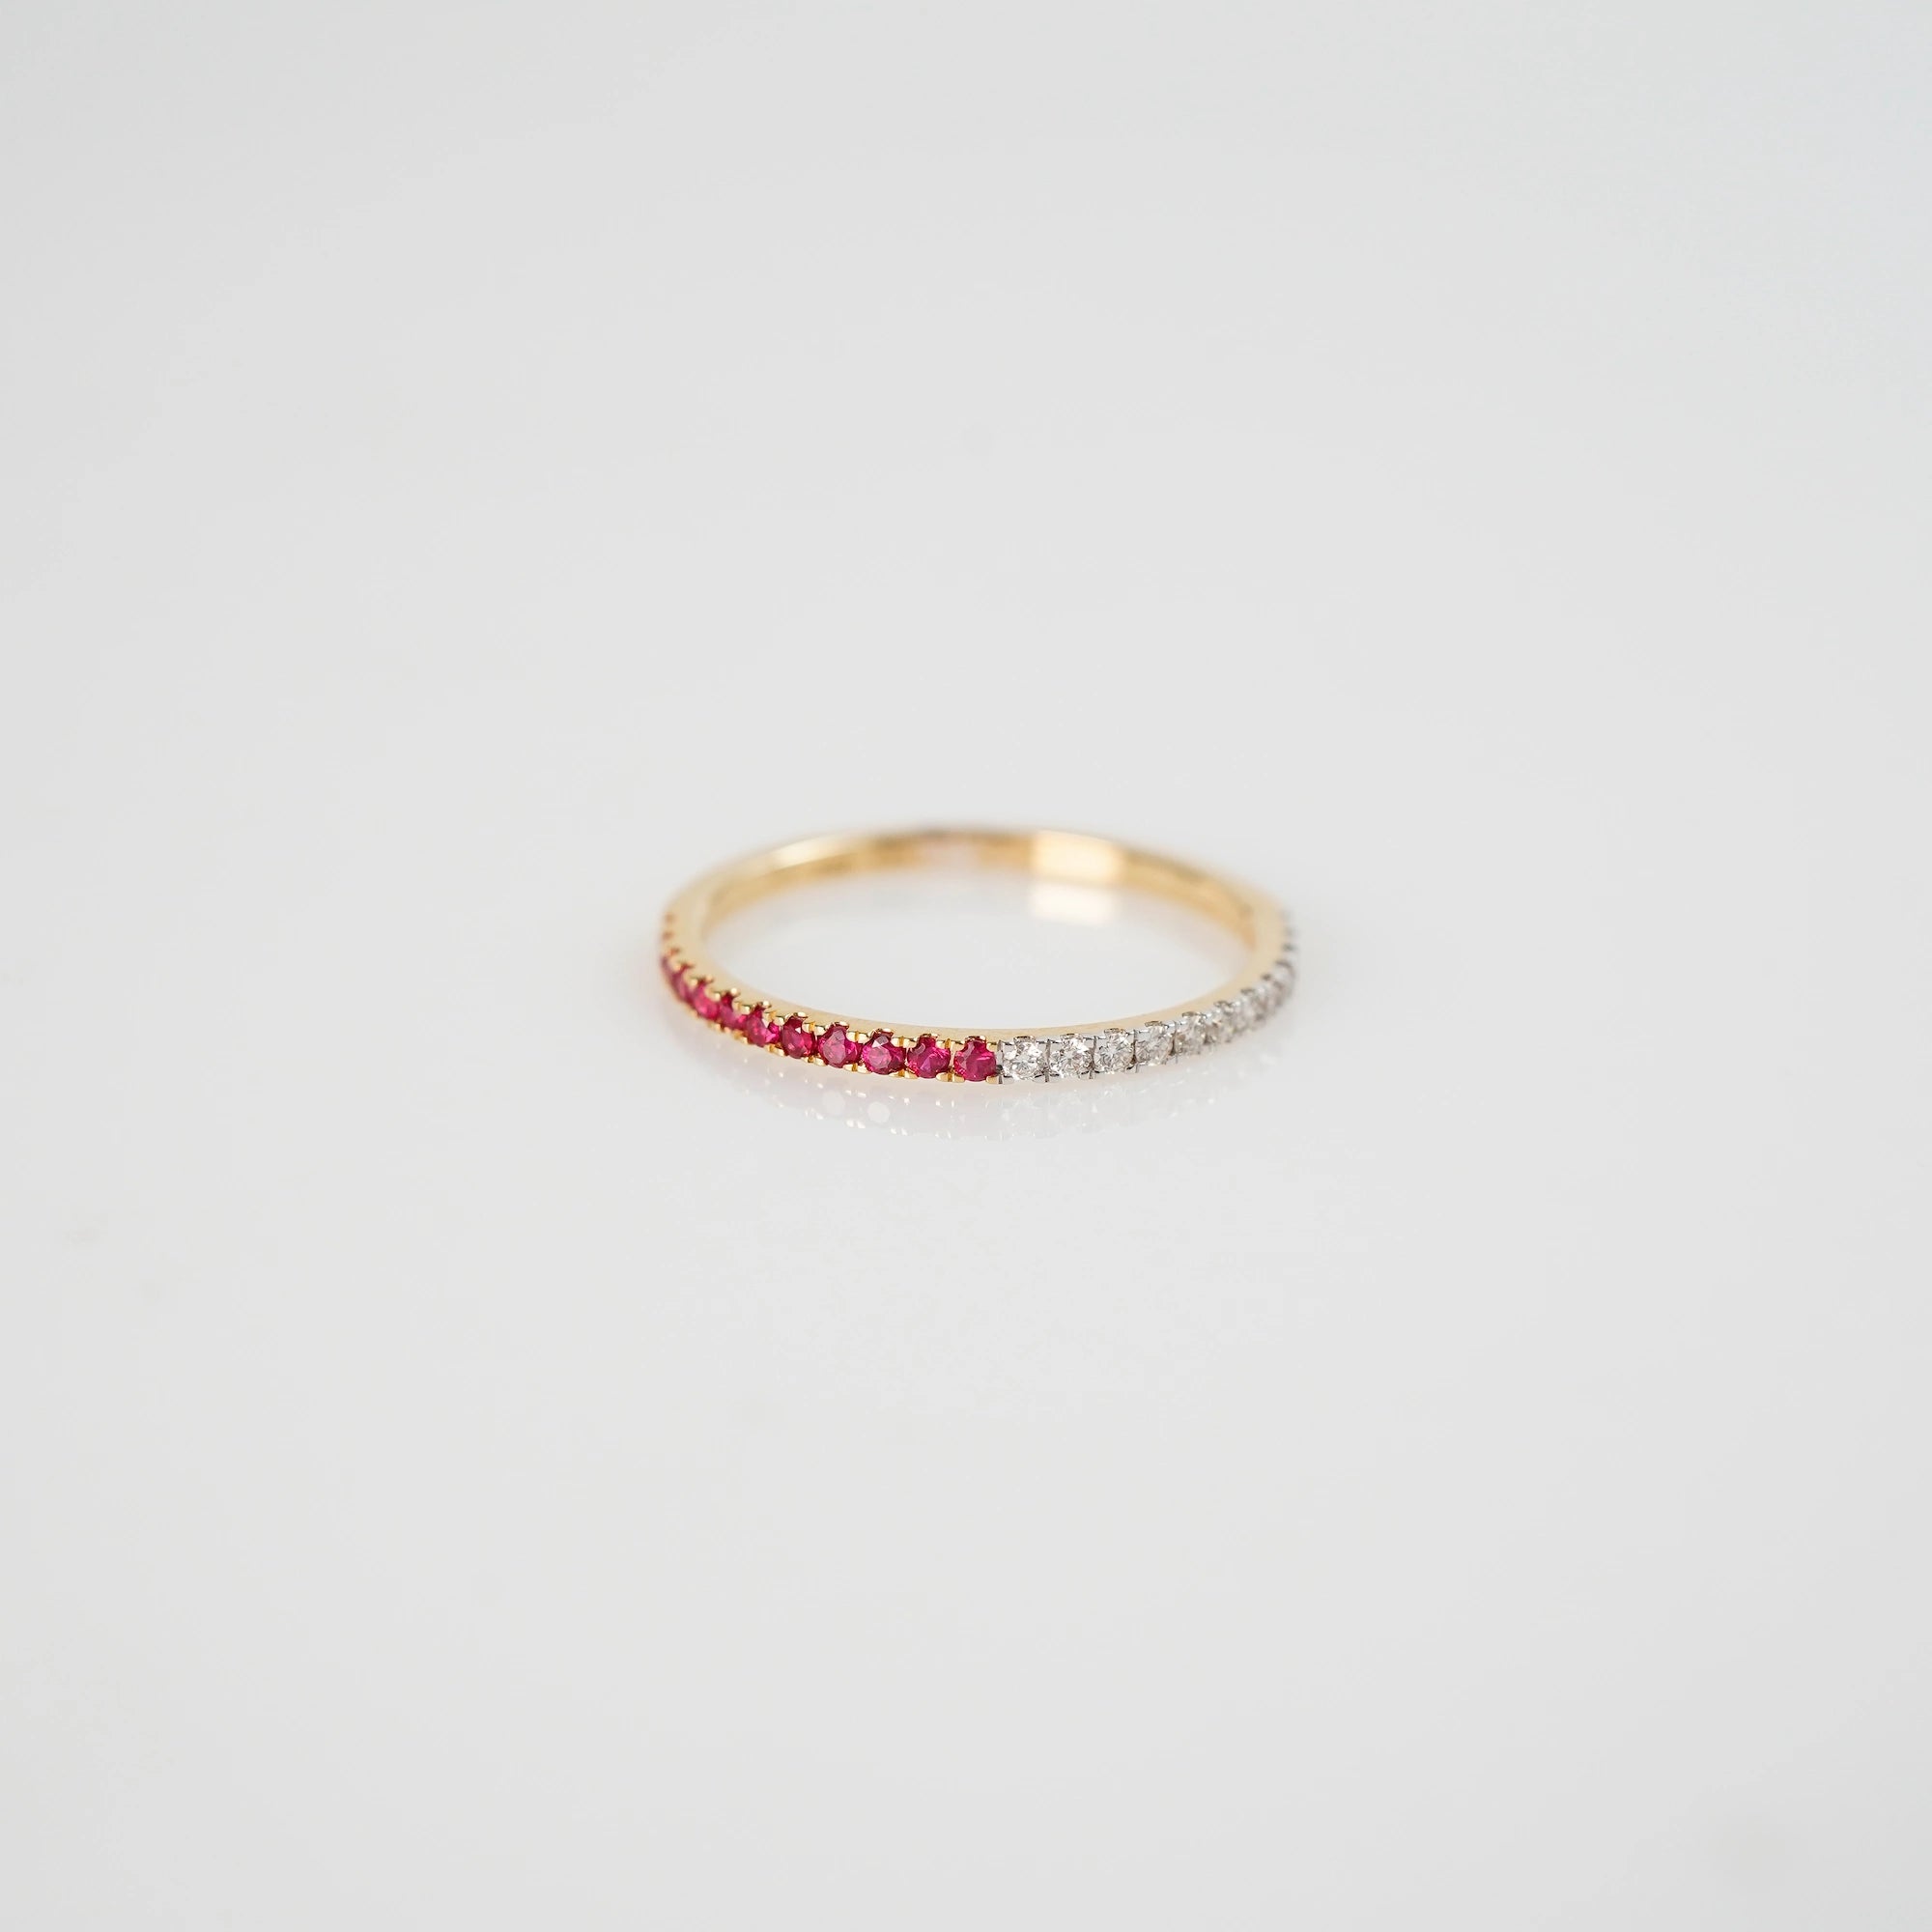 Produktfoto des liegenden Memoire Rings aus der Schmuckatelier Lang Collection, der halb mit Rubinen und halb mit Diamanten besetzt ist 